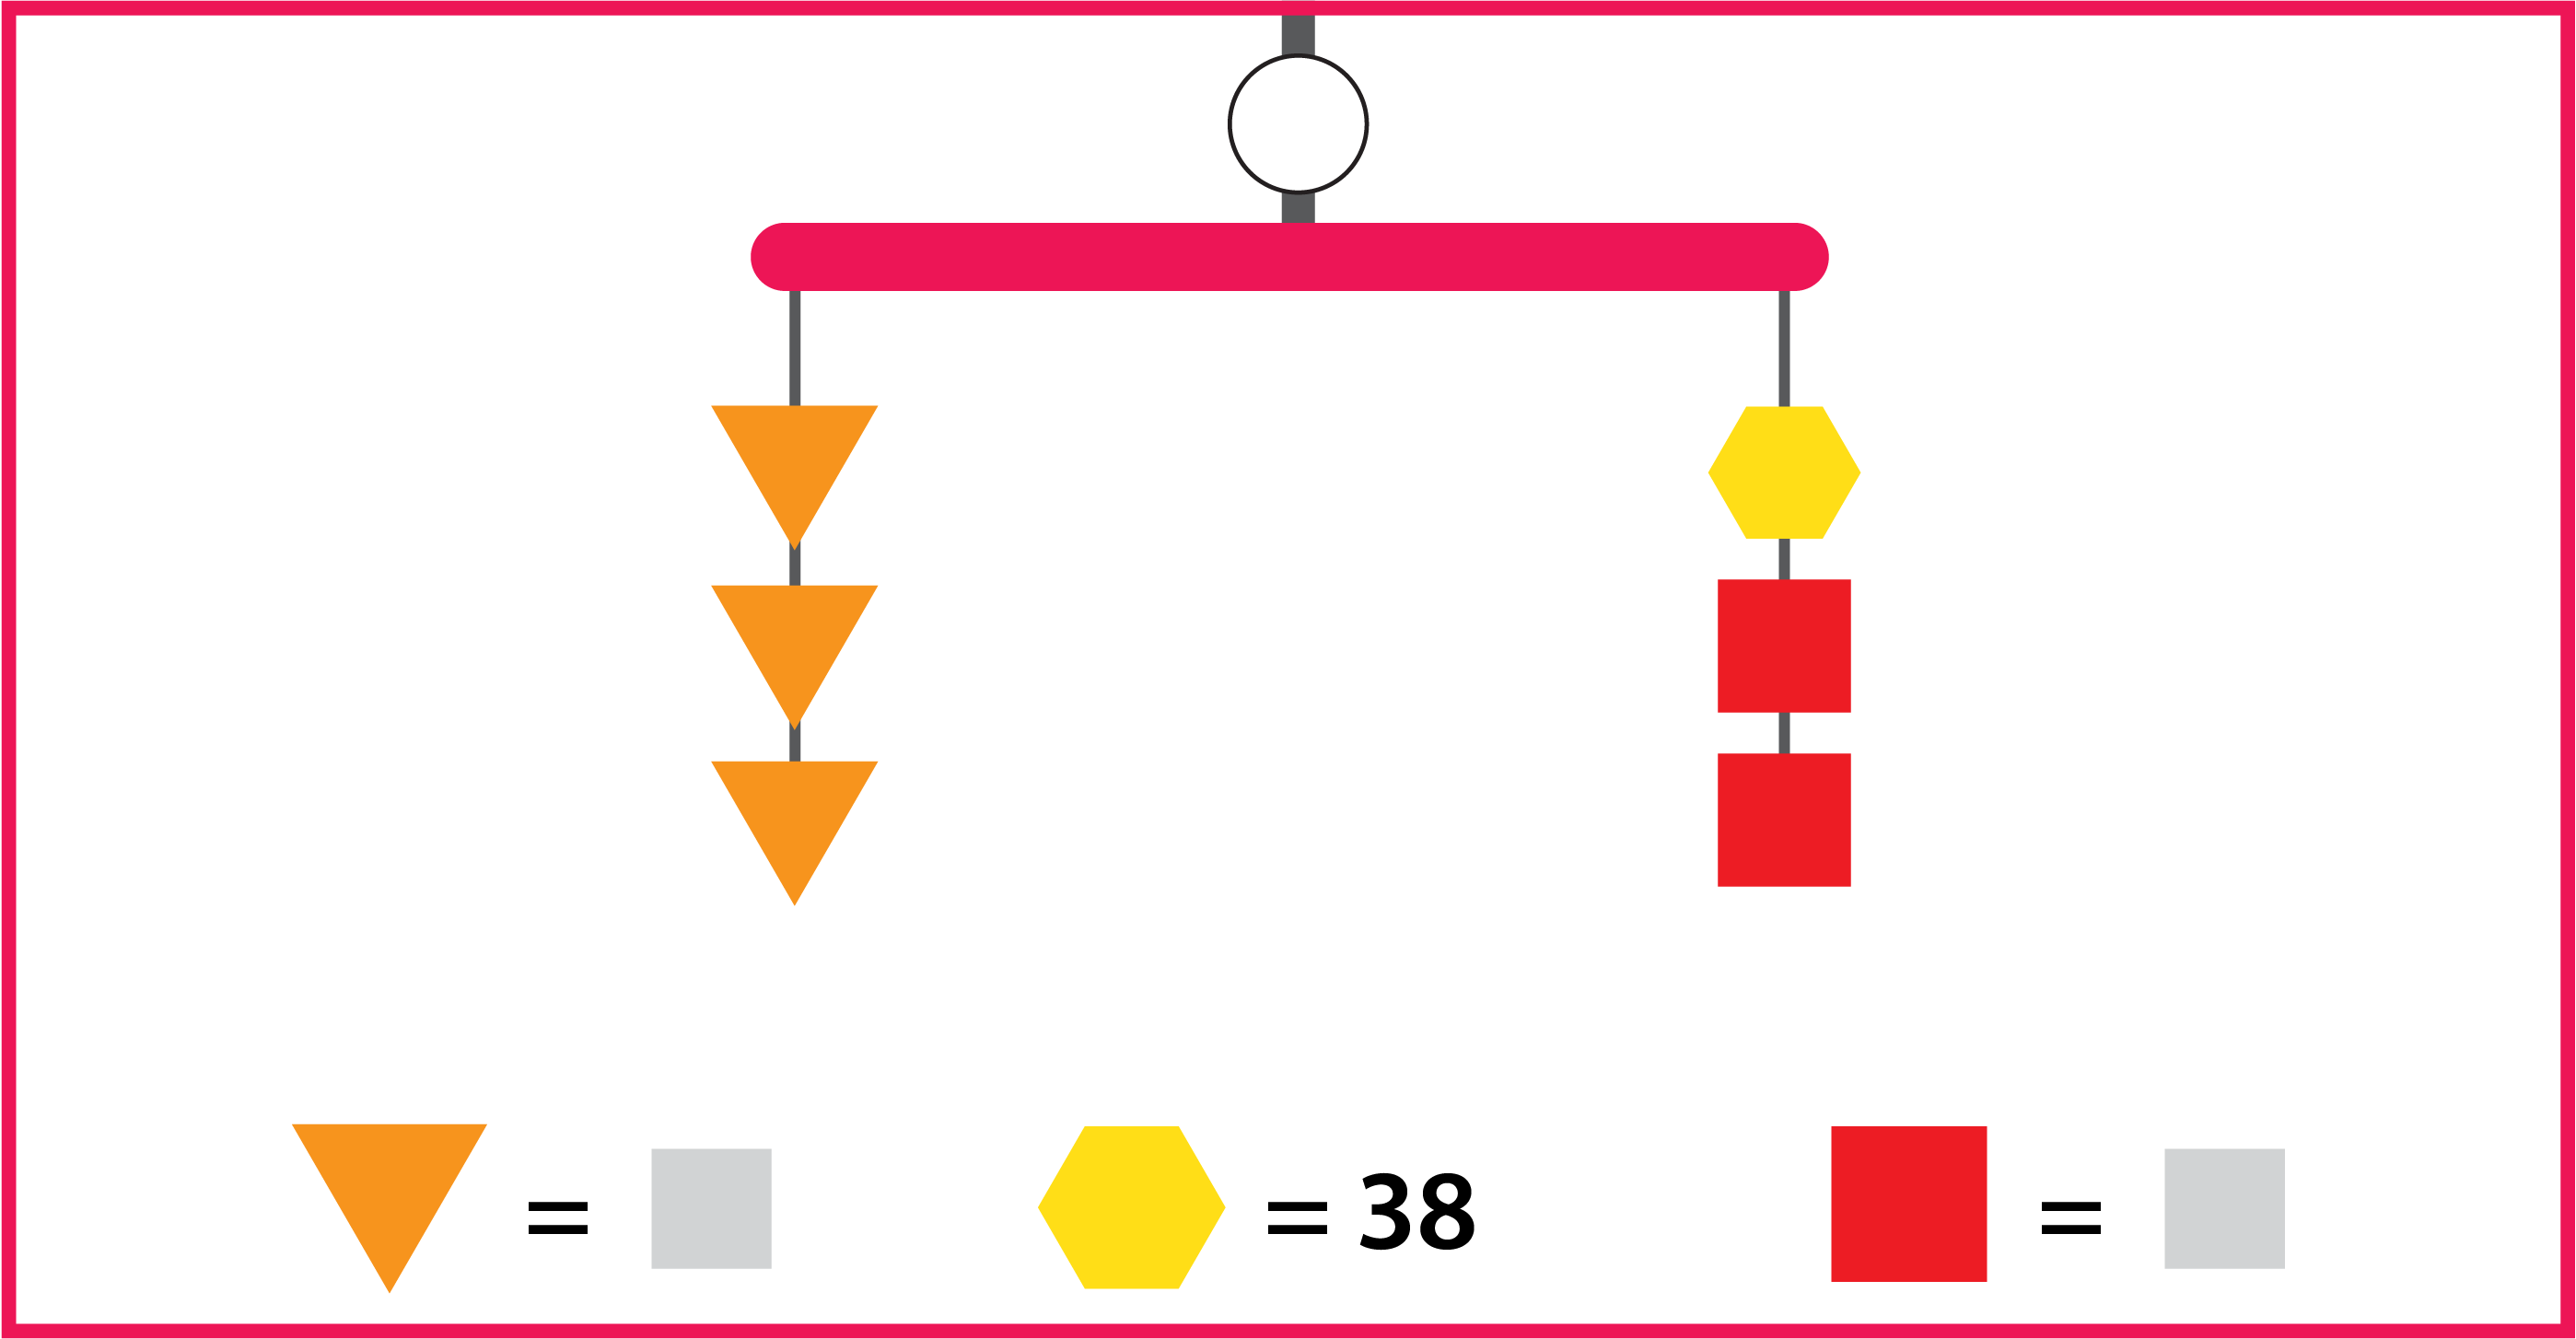 Un móvil equilibrado con un valor desconocido tiene 2 hilos. El hilo izquierdo tiene 3 triángulos anaranjados. El hilo derecho tiene 2 cuadrados rojos y 1 hexágono amarillo. El valor del hexágono es 38.